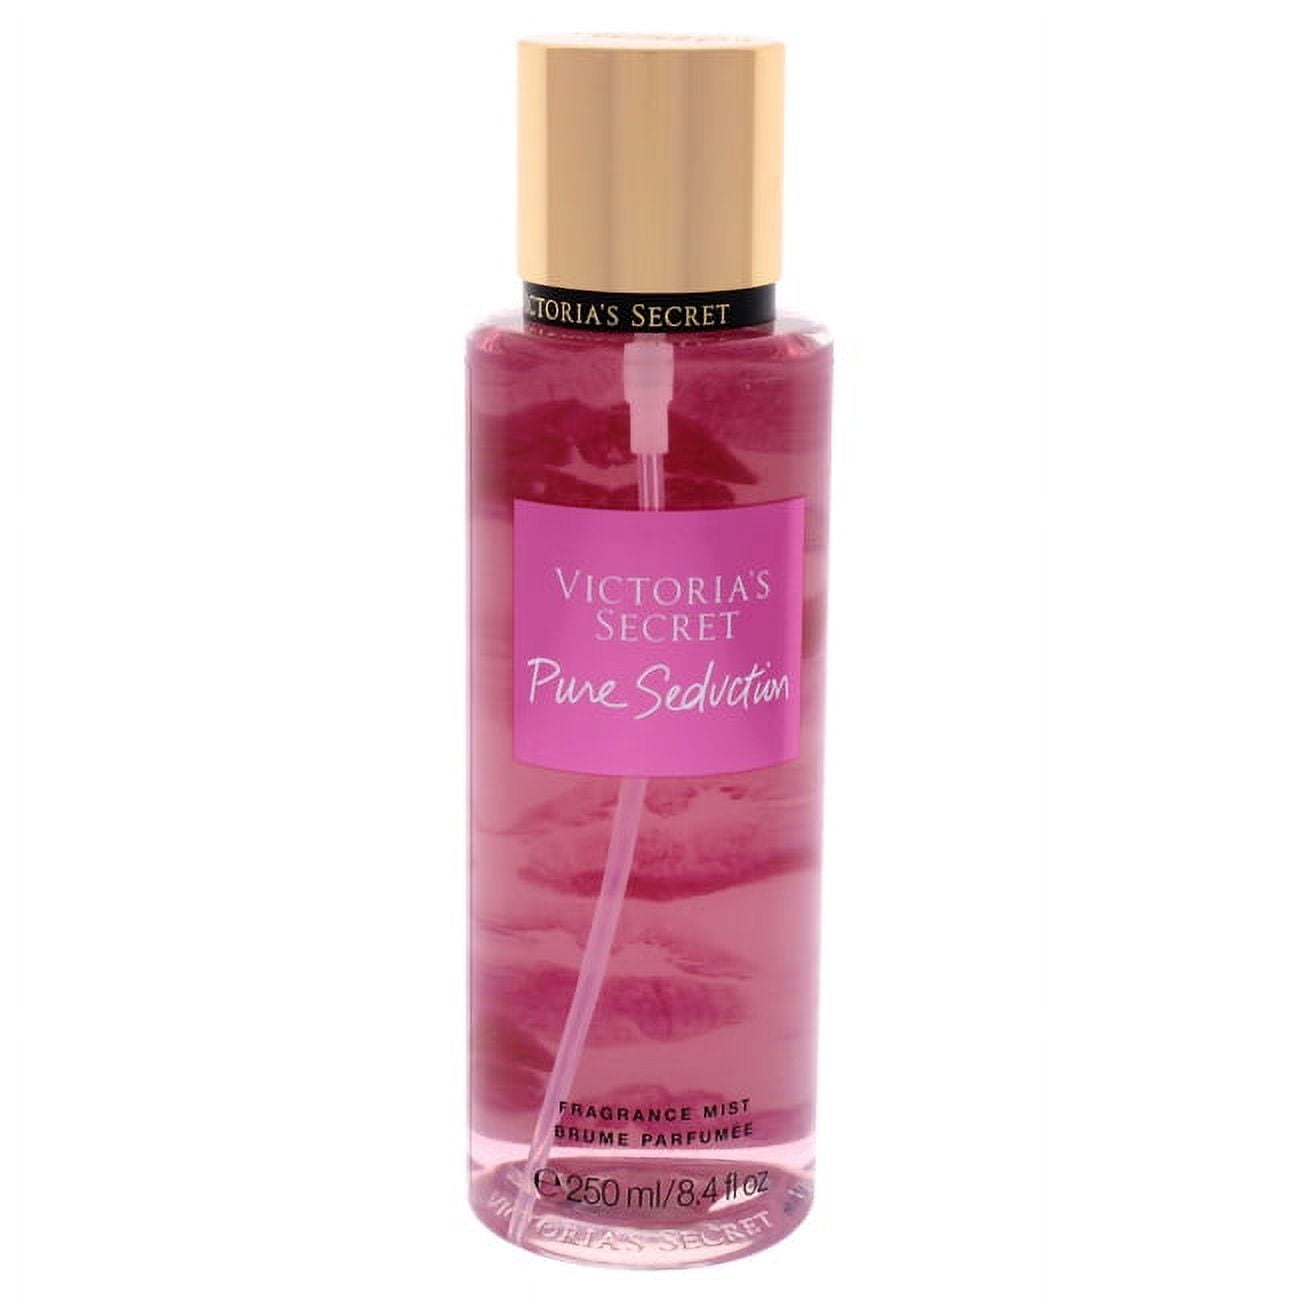 Victorias Secret Pure Seduction Fragrance Mist 8.4 oz 